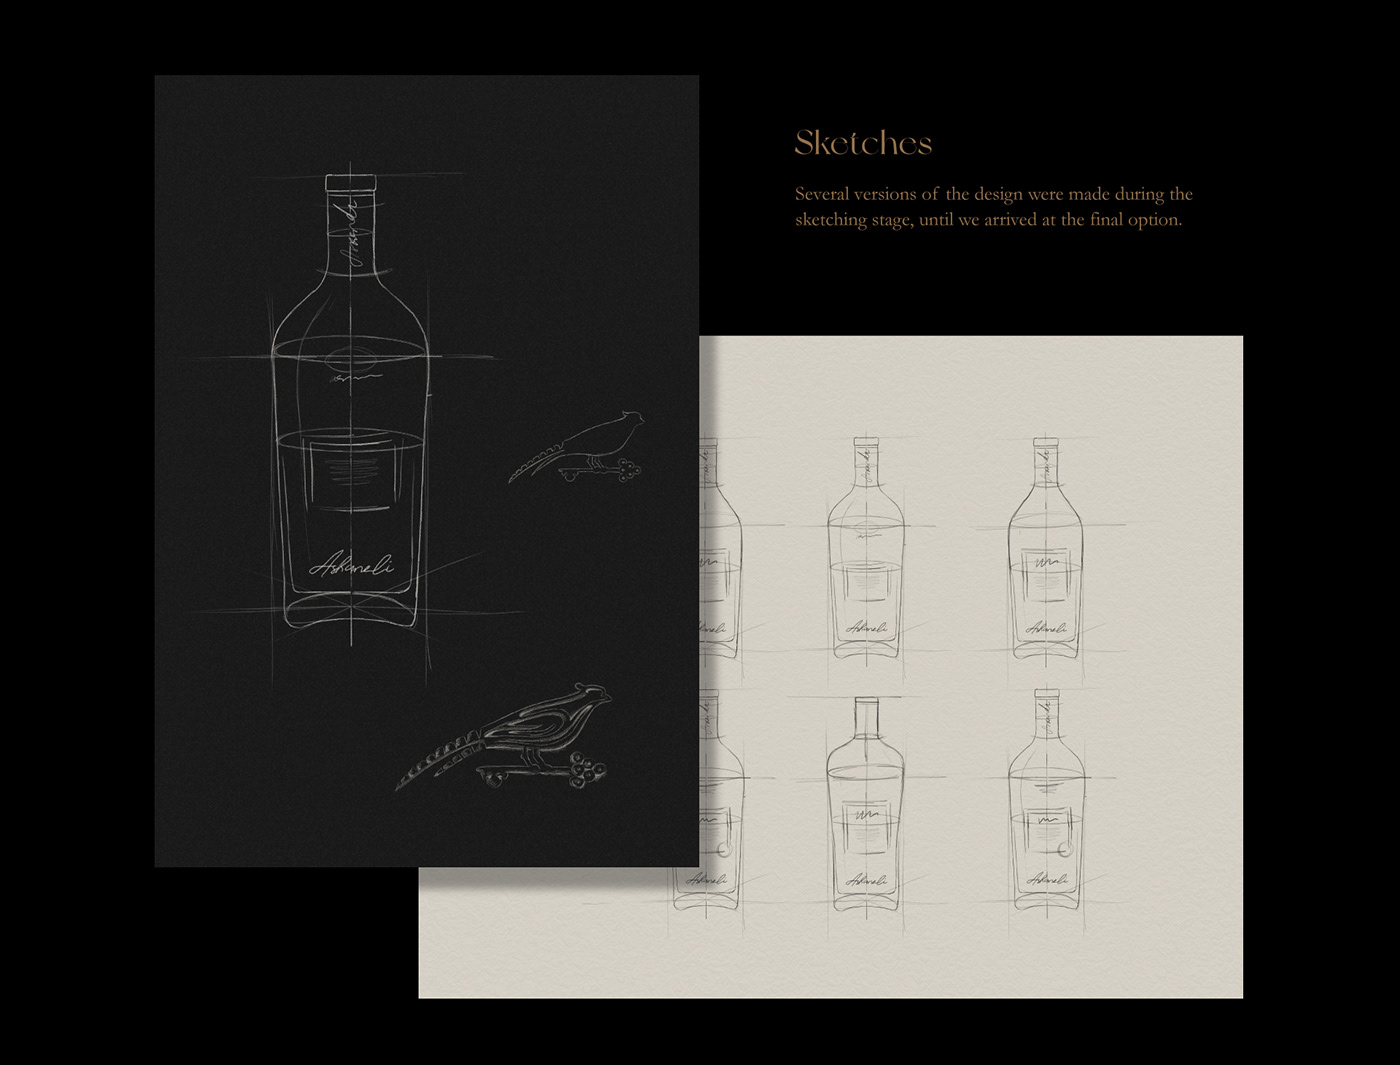 3d modeling askaneli bottle design Brandy Cognac label design Packaging packaging design product design  vsop